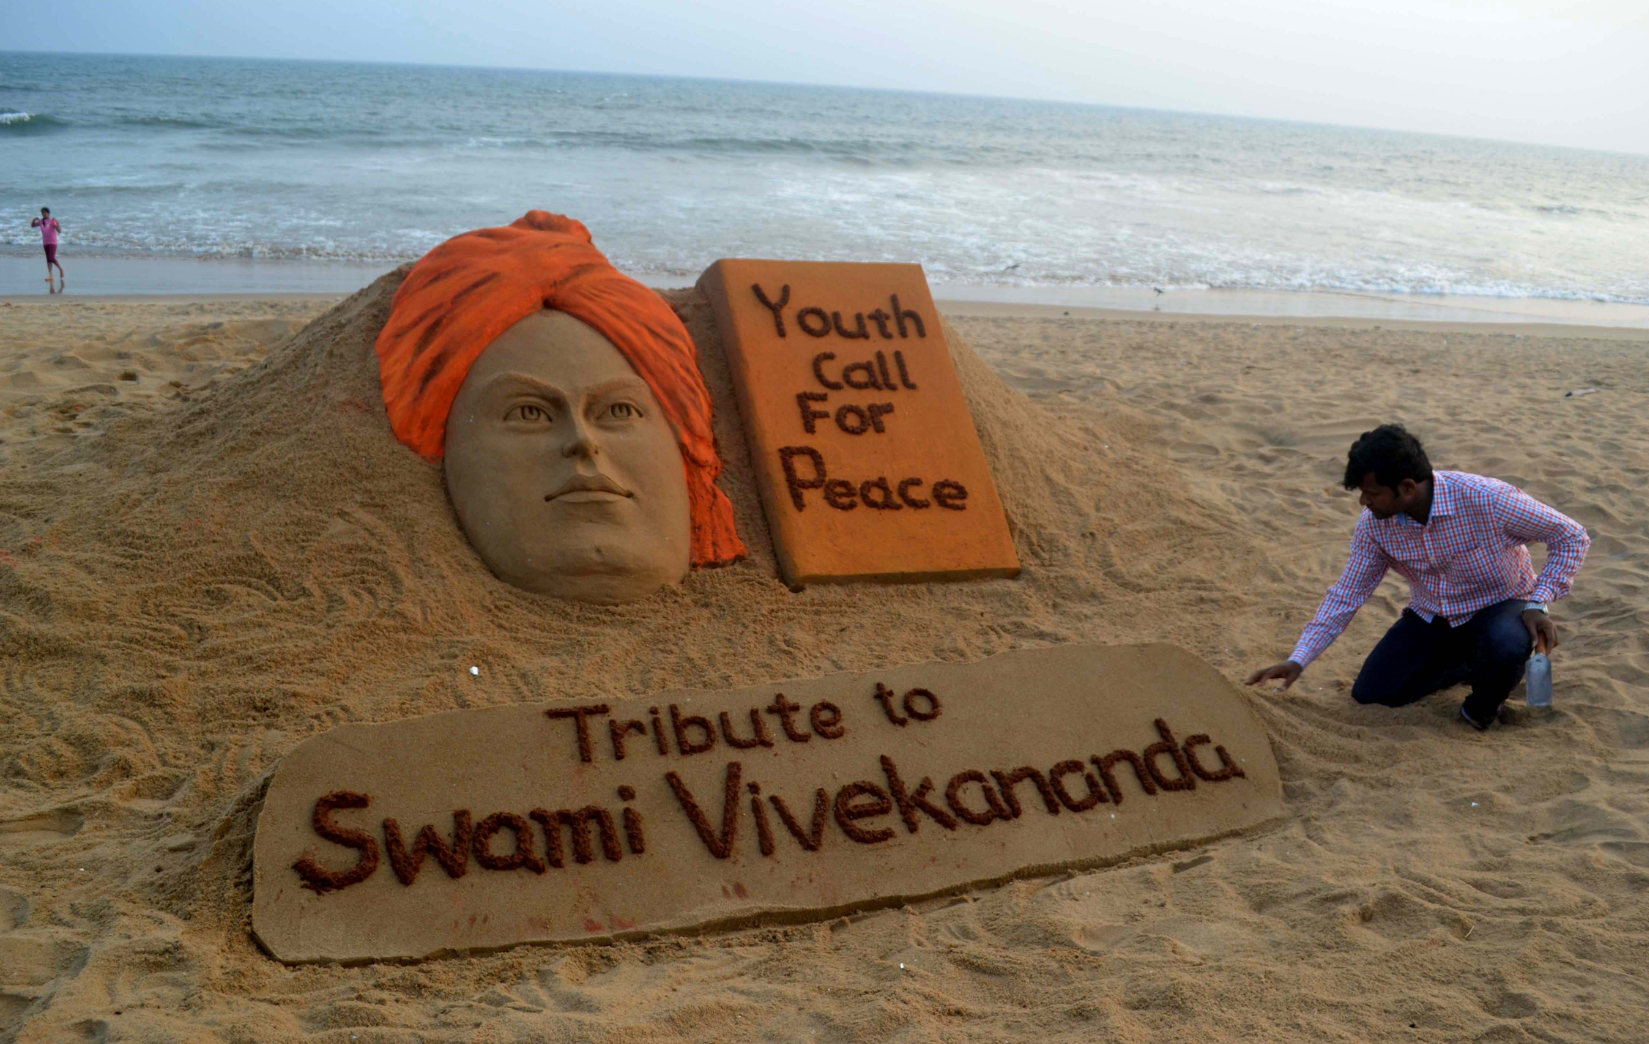 Sudarsan Pattnaik at the Swami Vivekananda Jayanti creating by sand at Puri, India. Source: Zuma/Global Look Press